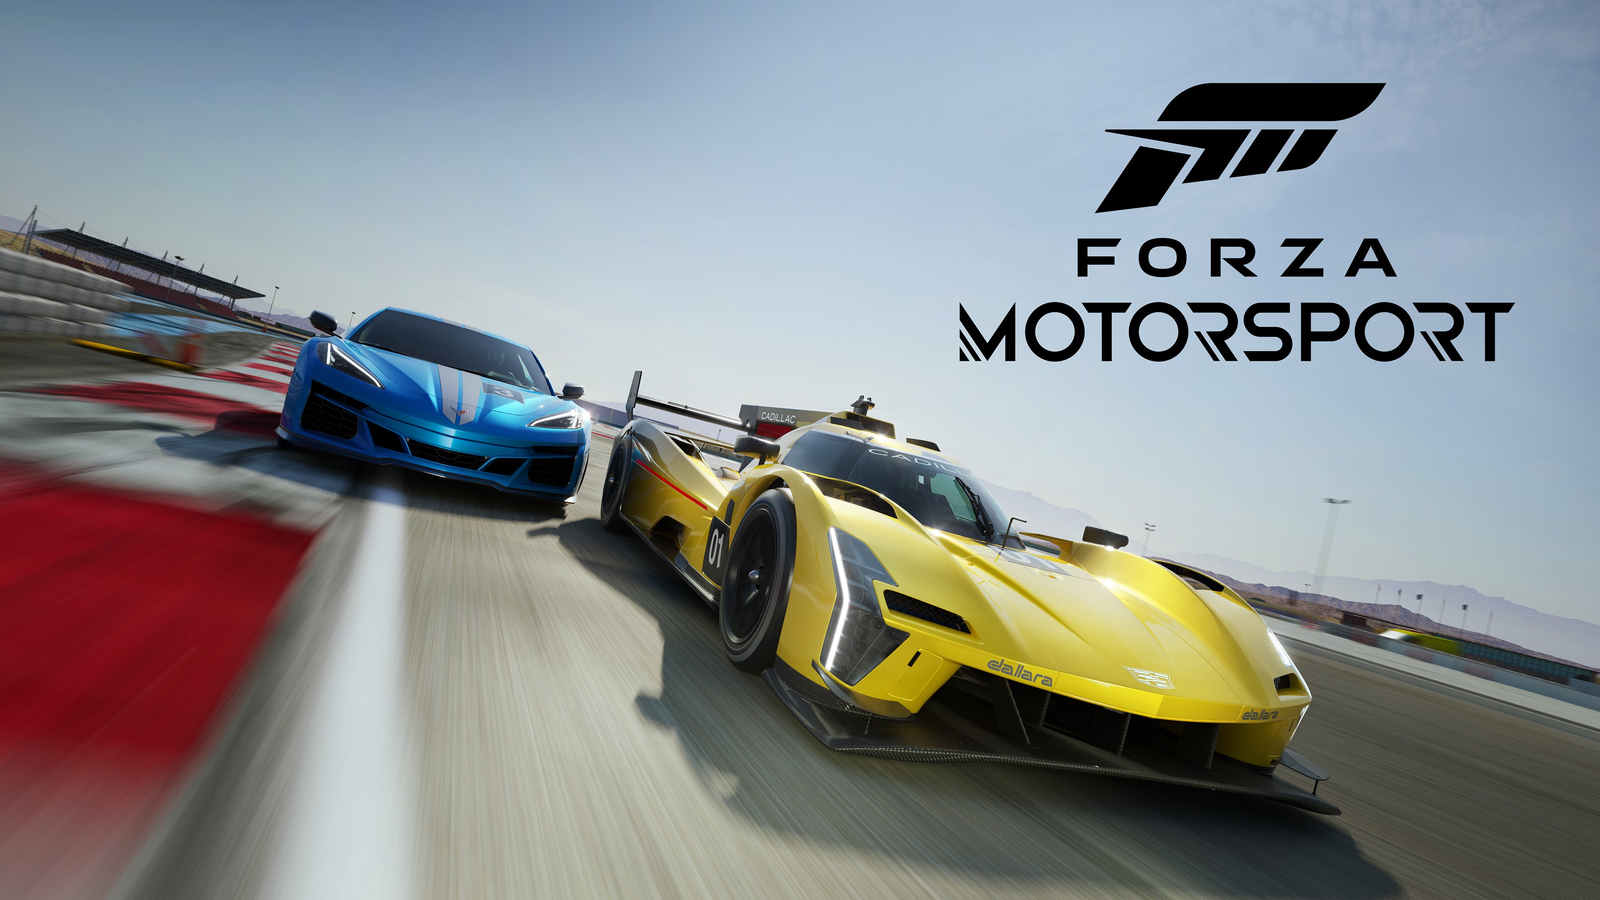 Artwork ufficiale di Forza Motorsport